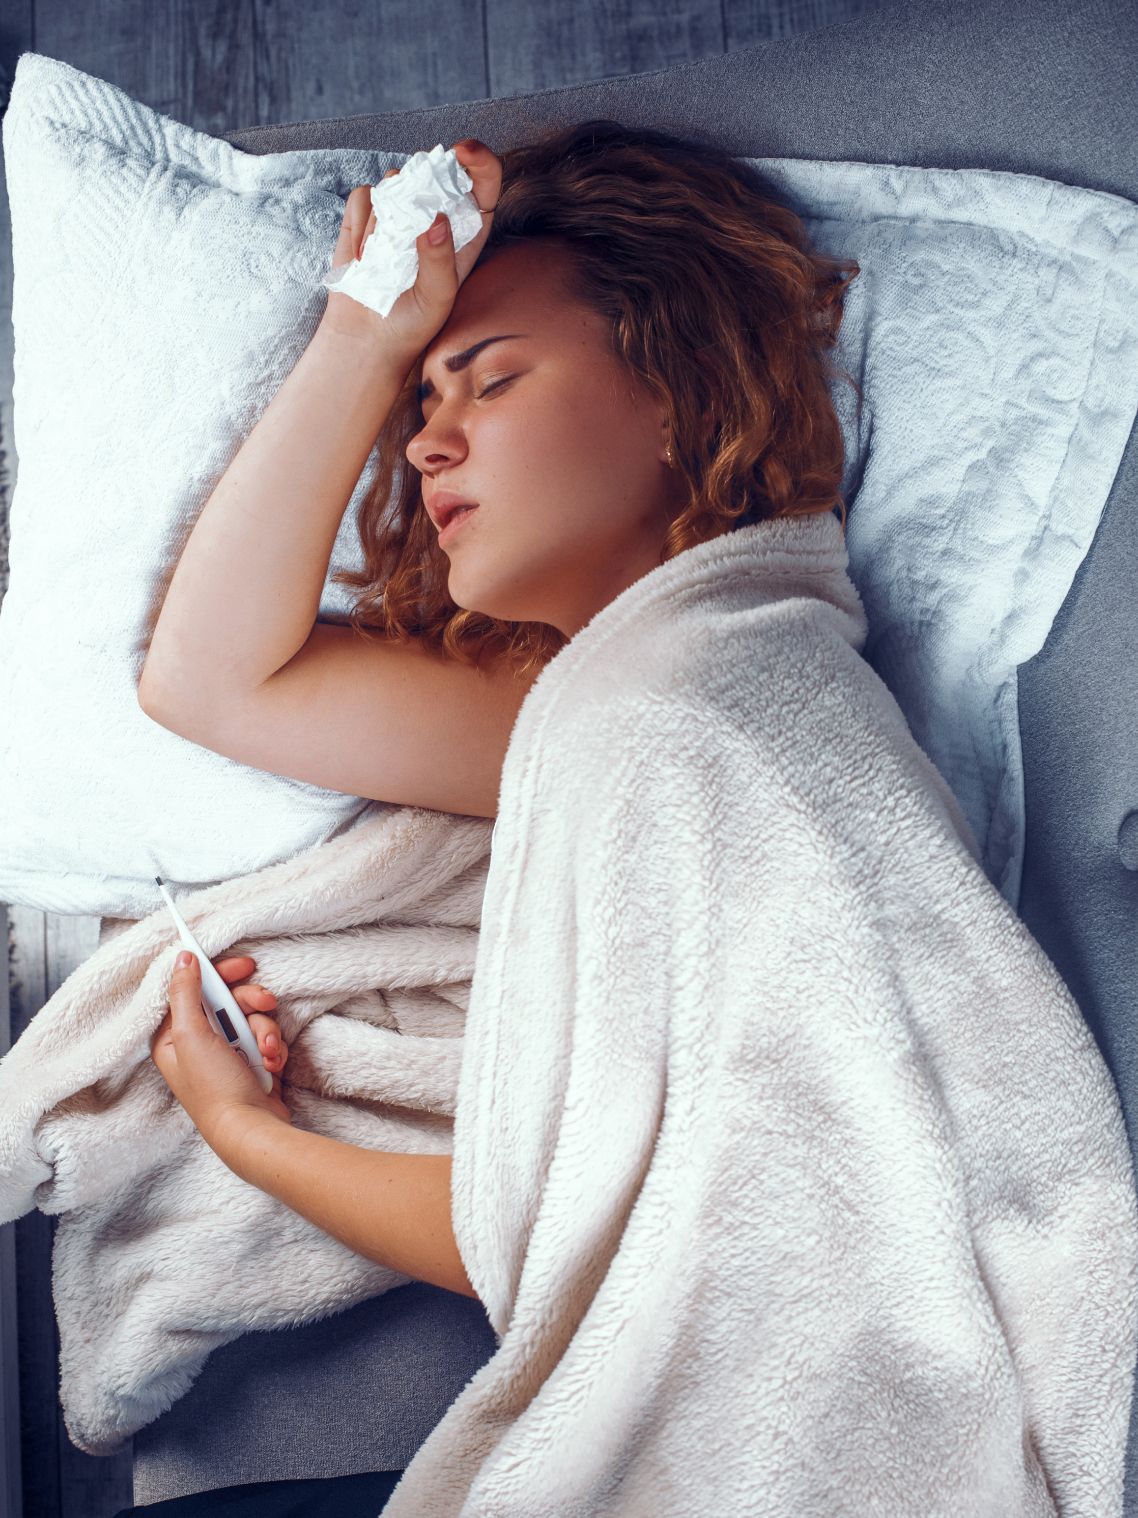 Eine Frau liegt krank im Bett, hält sich den Kopf und in der anderen Hand ein Fieberrthermometer.